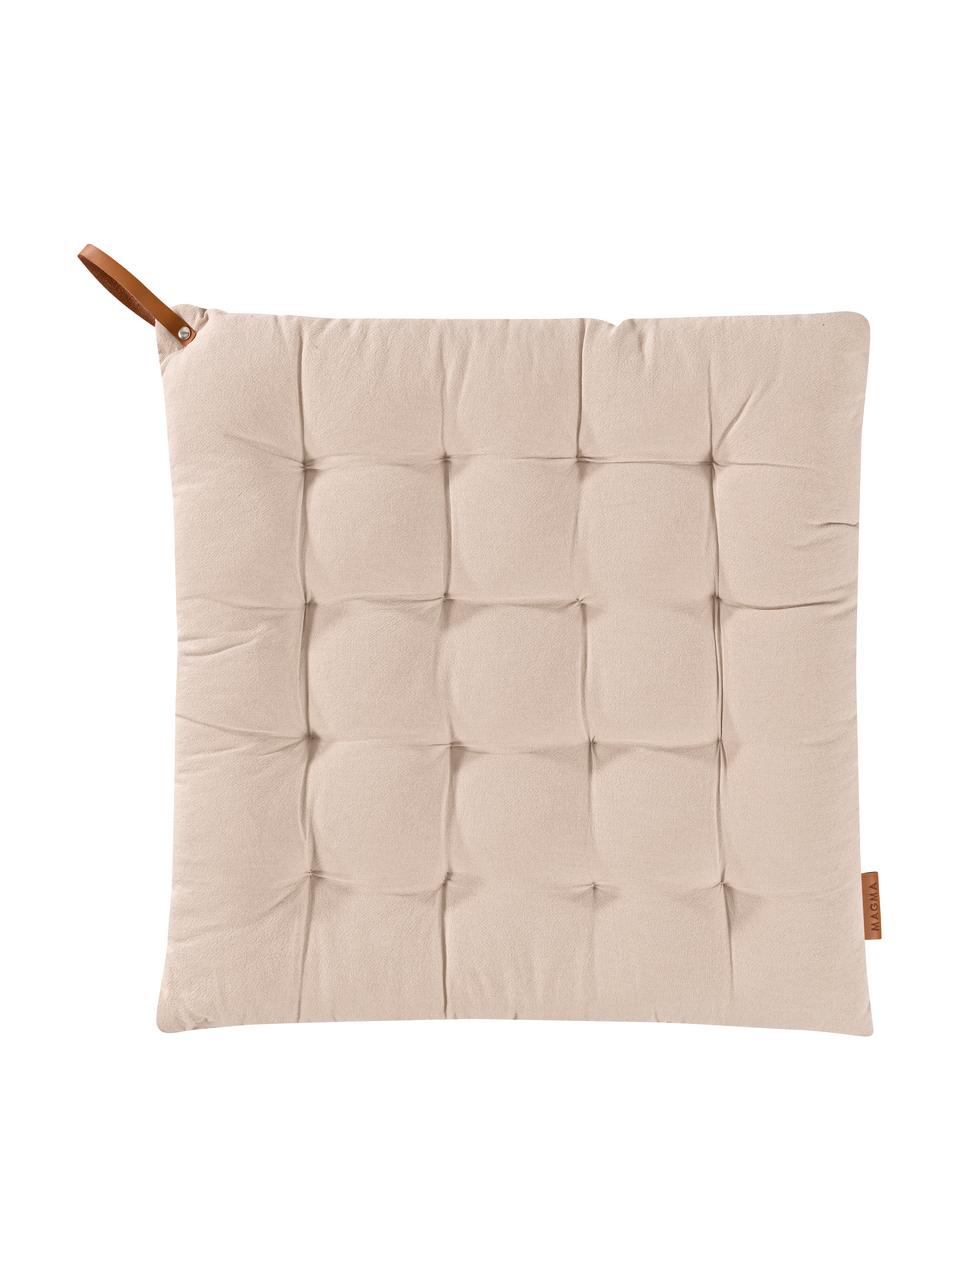 Poduszka na siedzisko Billie, 100% bawełna, Beżowy, S 40 x D 40 cm